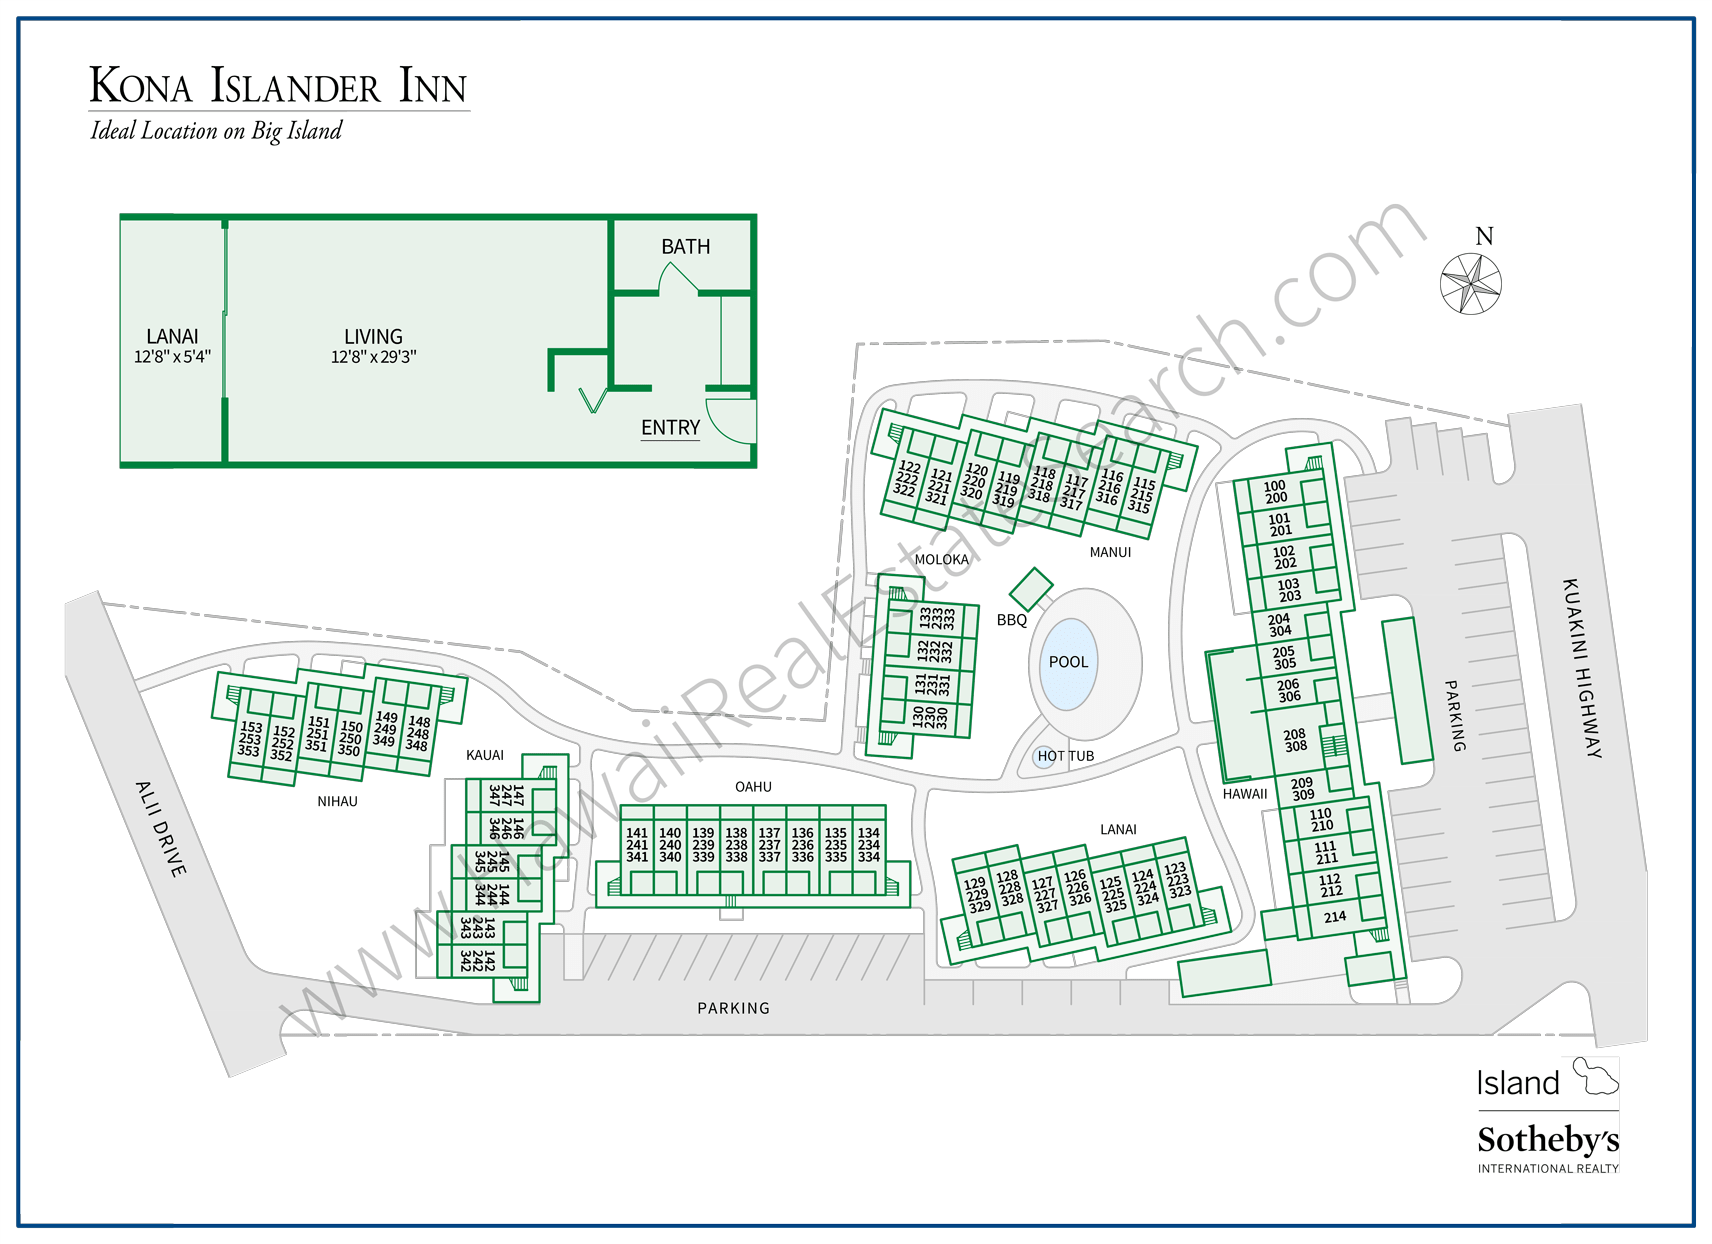 Kona Islander Inn Map